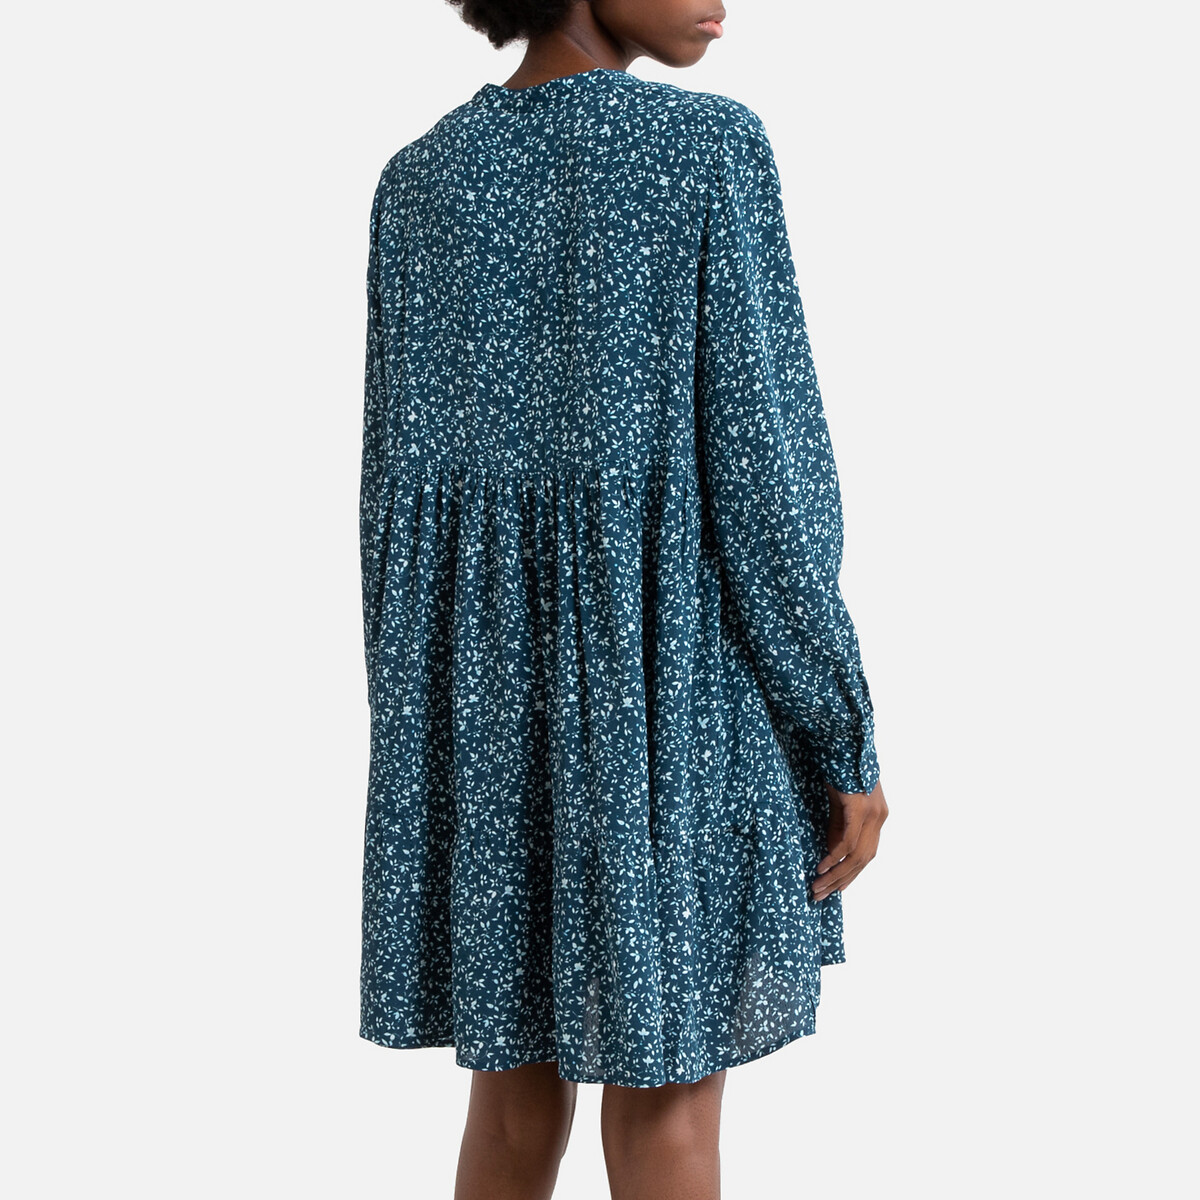 Платье LaRedoute С принтом короткое S синий, размер S - фото 4